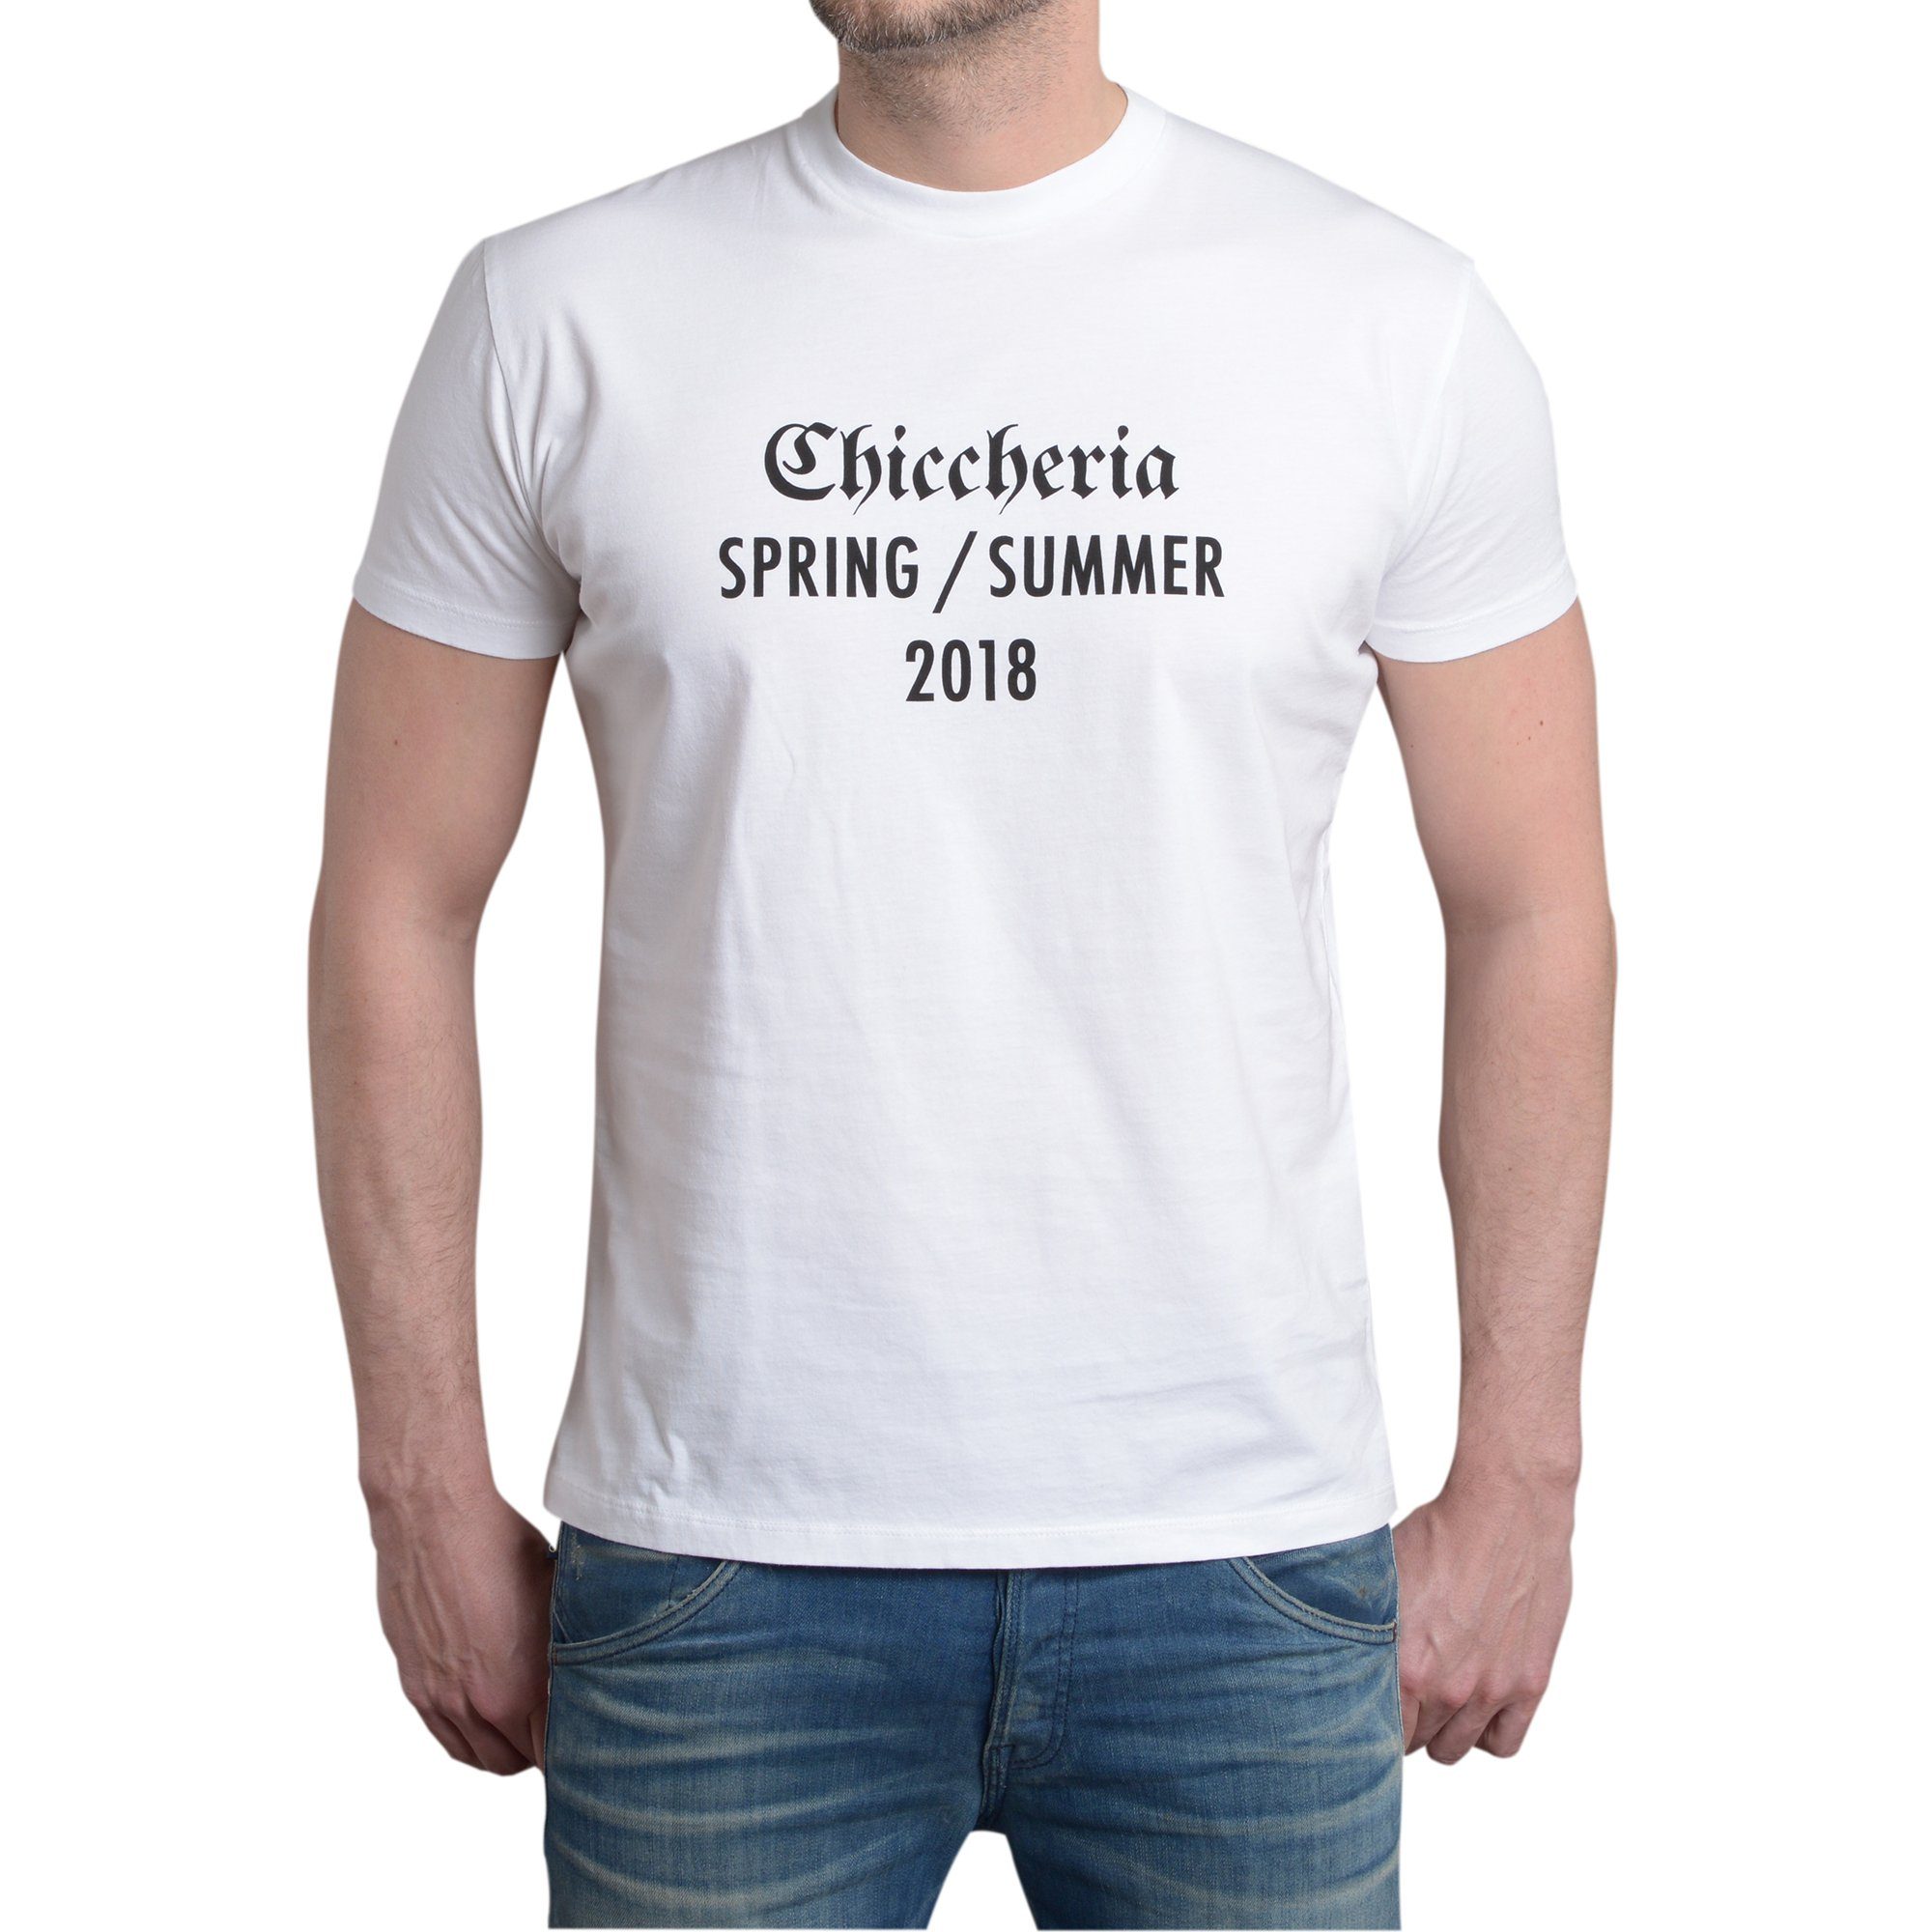 Chiccheria Brand T-Shirt Spring Weiß / Summer 2018